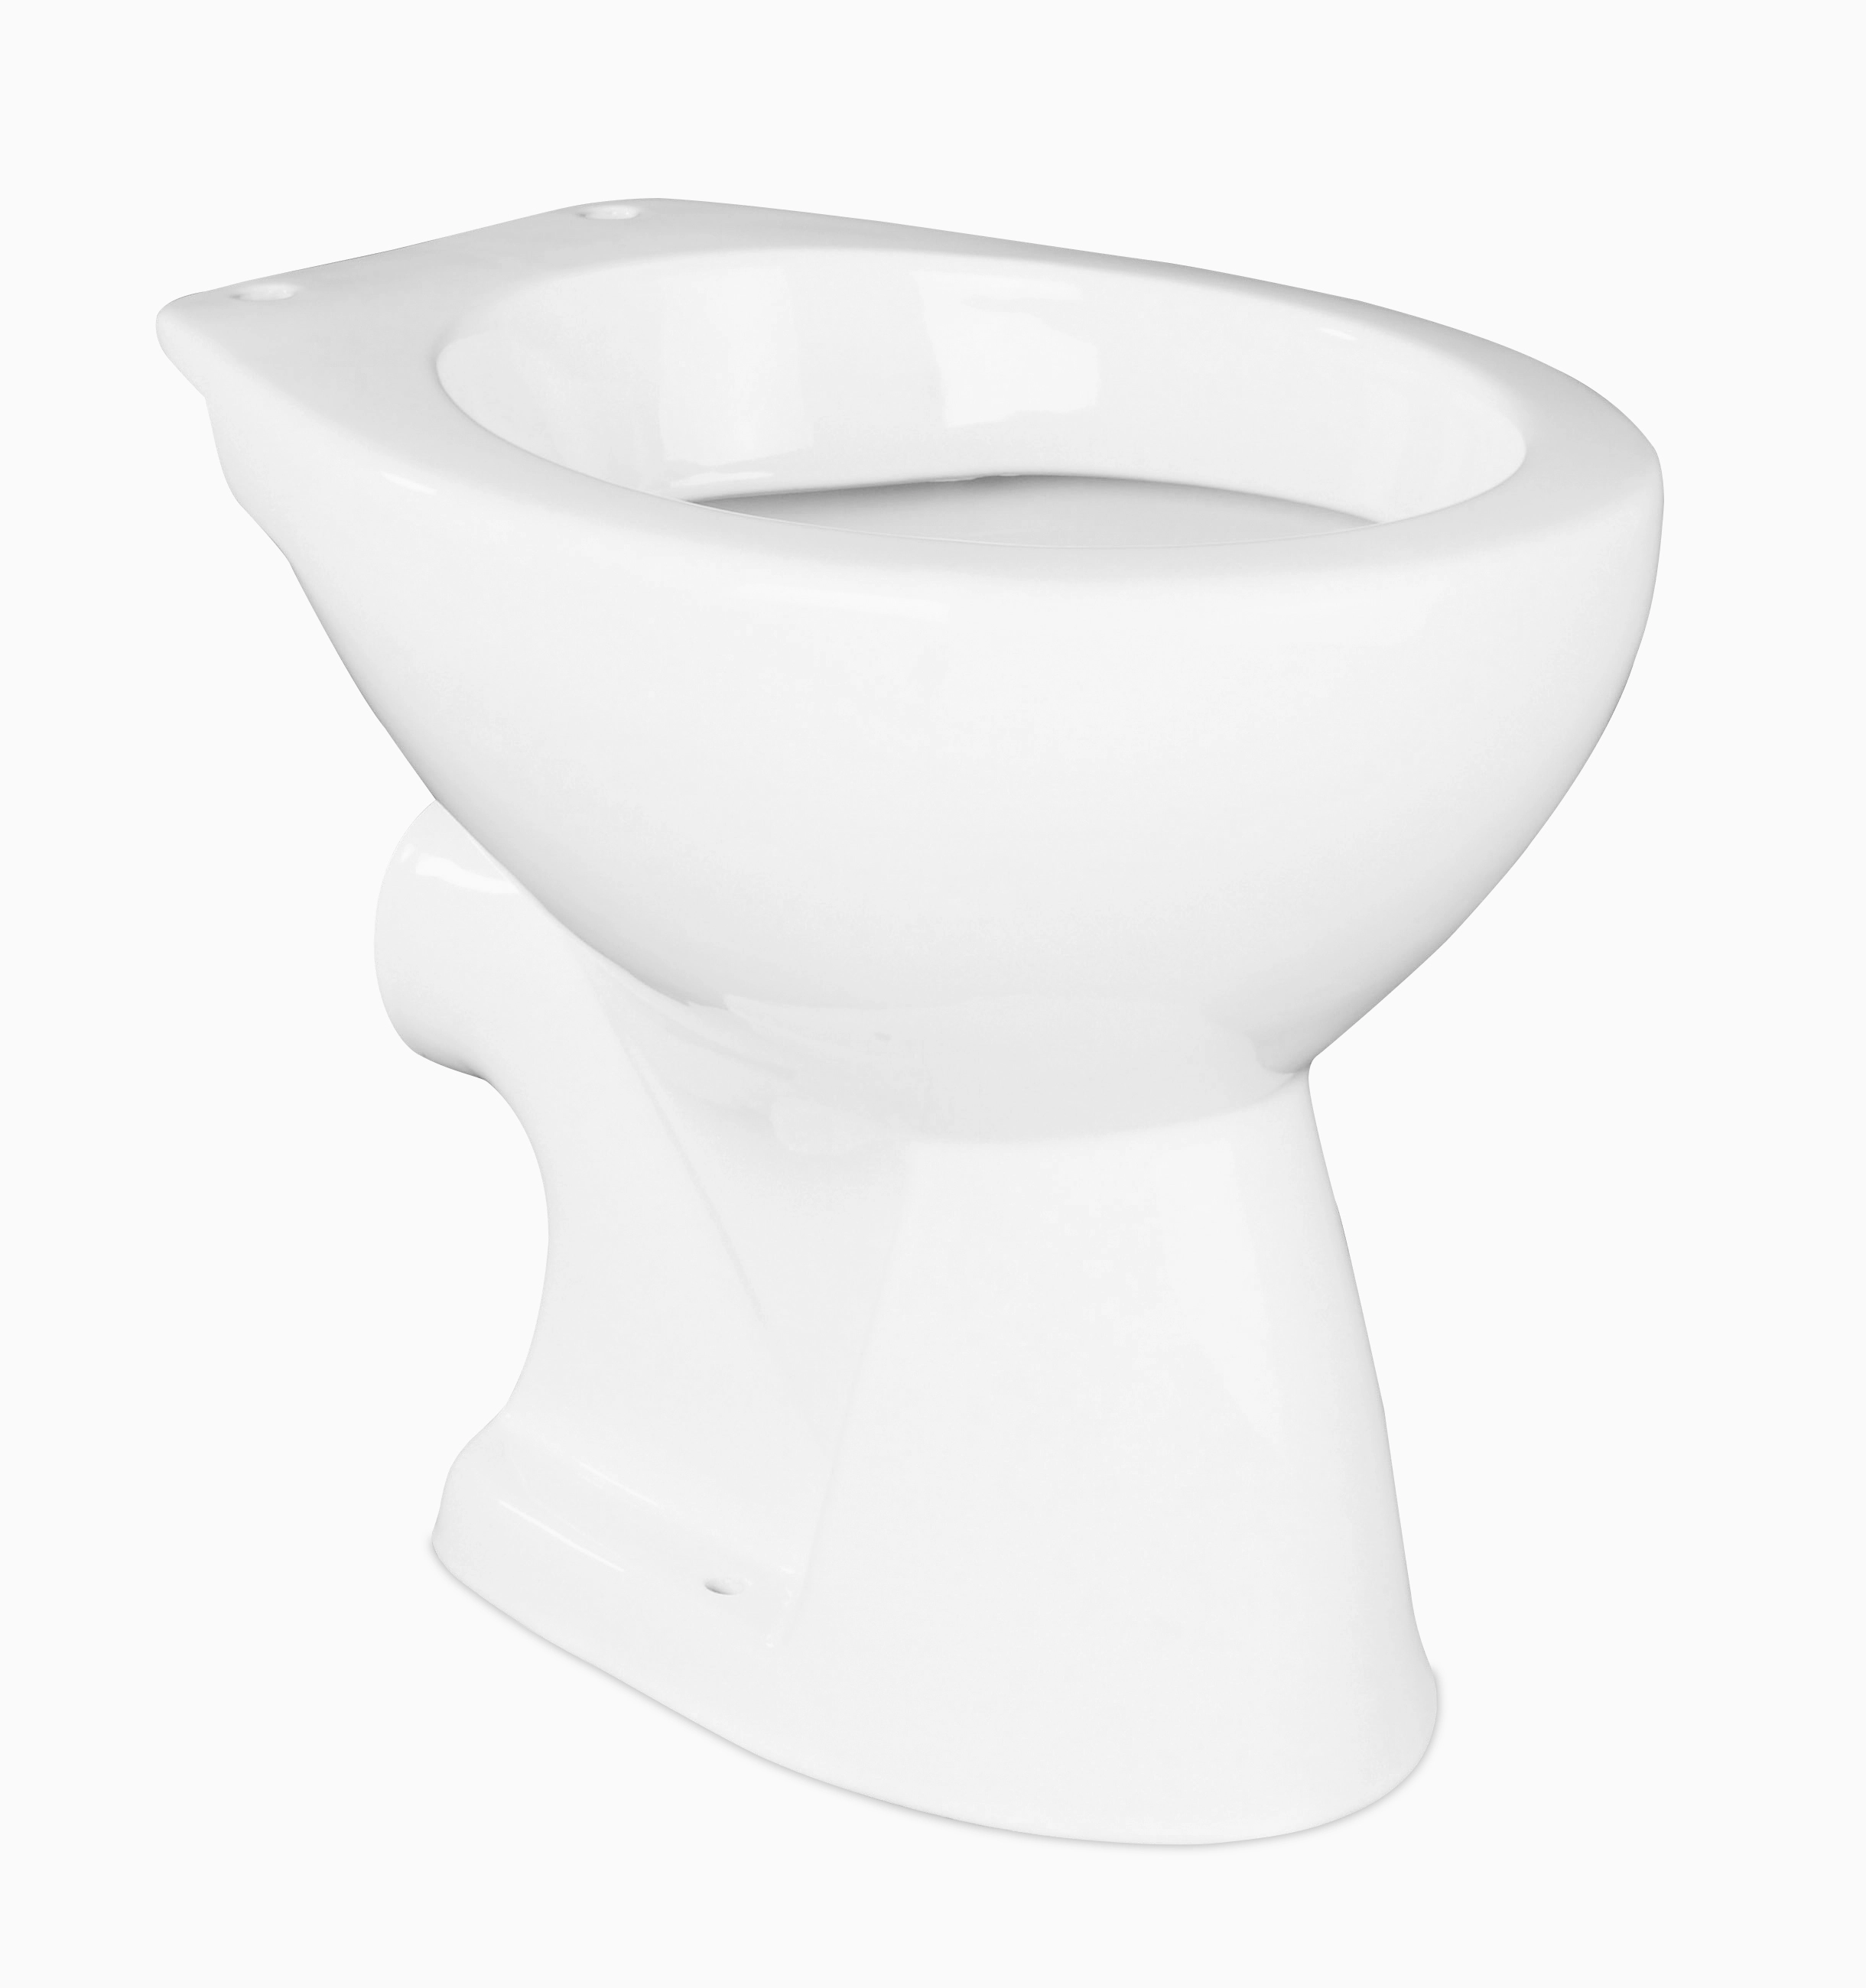 Toilette im klassischen Bad mit … – Bild kaufen – 13211185